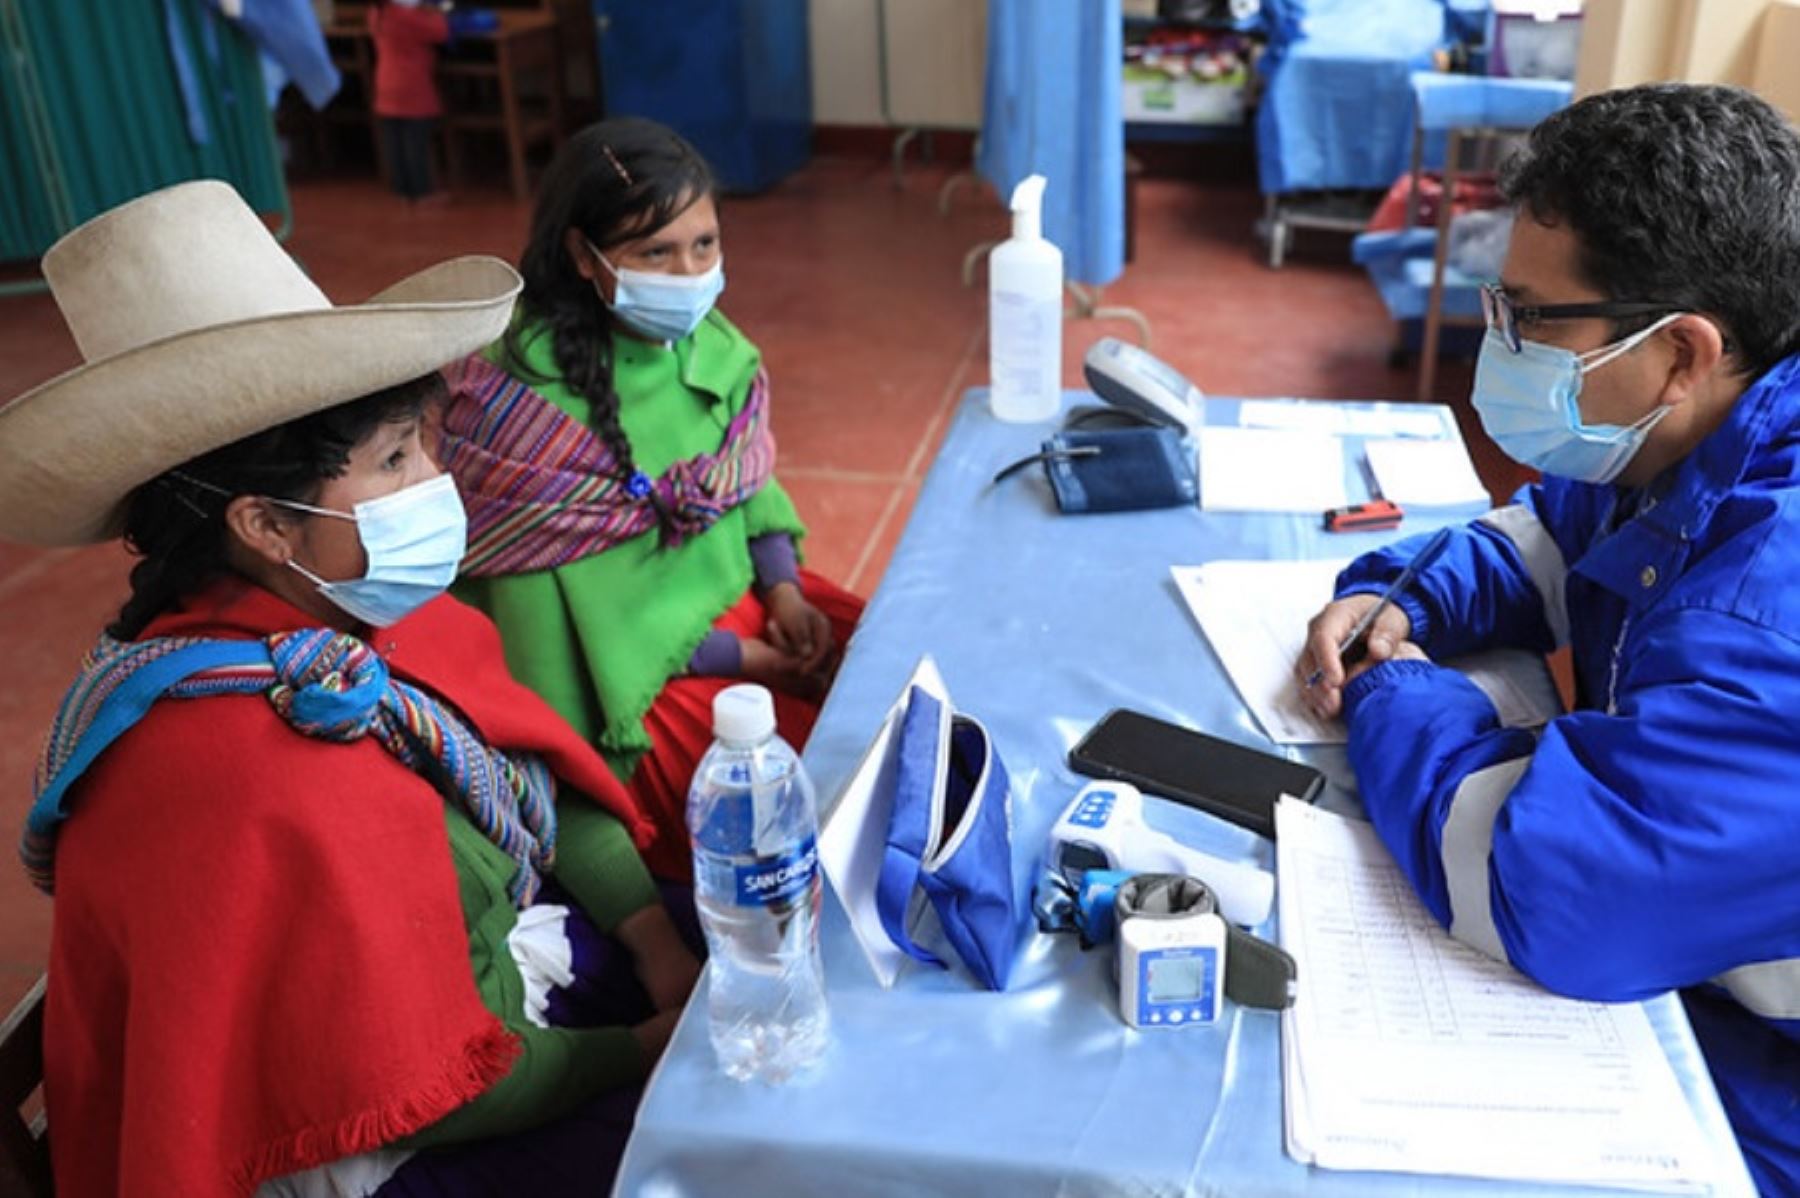 Más de 2,000 atenciones médicas gratuitas brindó hasta el momento el Seguro Social de Salud (EsSalud) durante la campaña multisectorial de salud que se realiza simultáneamente en los distritos de Chetilla y Oxamarca, en Cajamarca, la cual beneficia a la población asegurada y no asegurada de esta región del país.